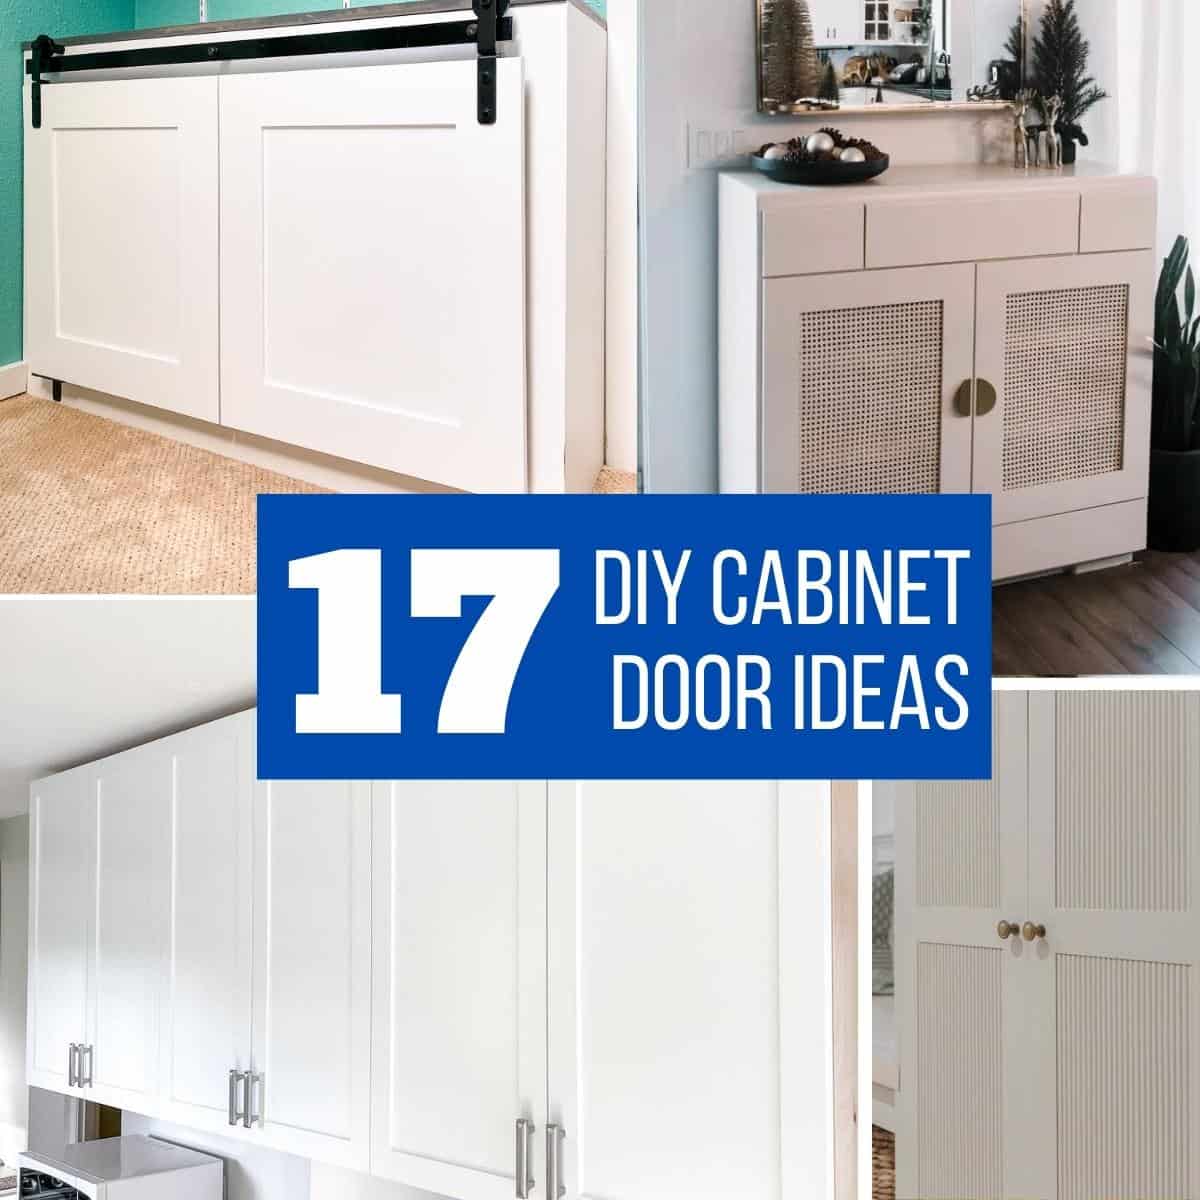 17 Easy Diy Cabinet Door Ideas On A